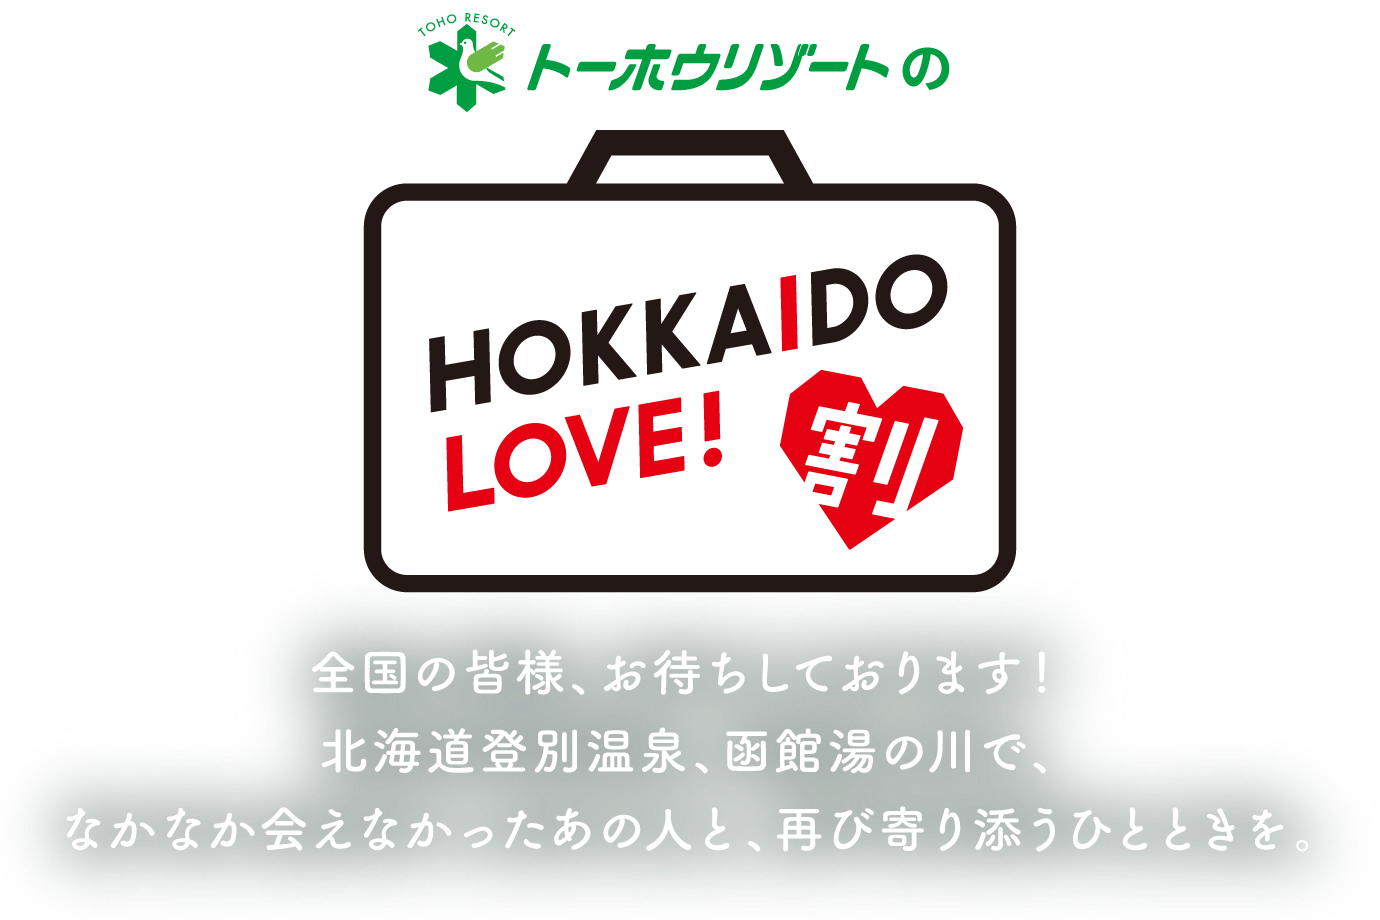 トーホウリゾートのHOKKAIDO LOVE!割